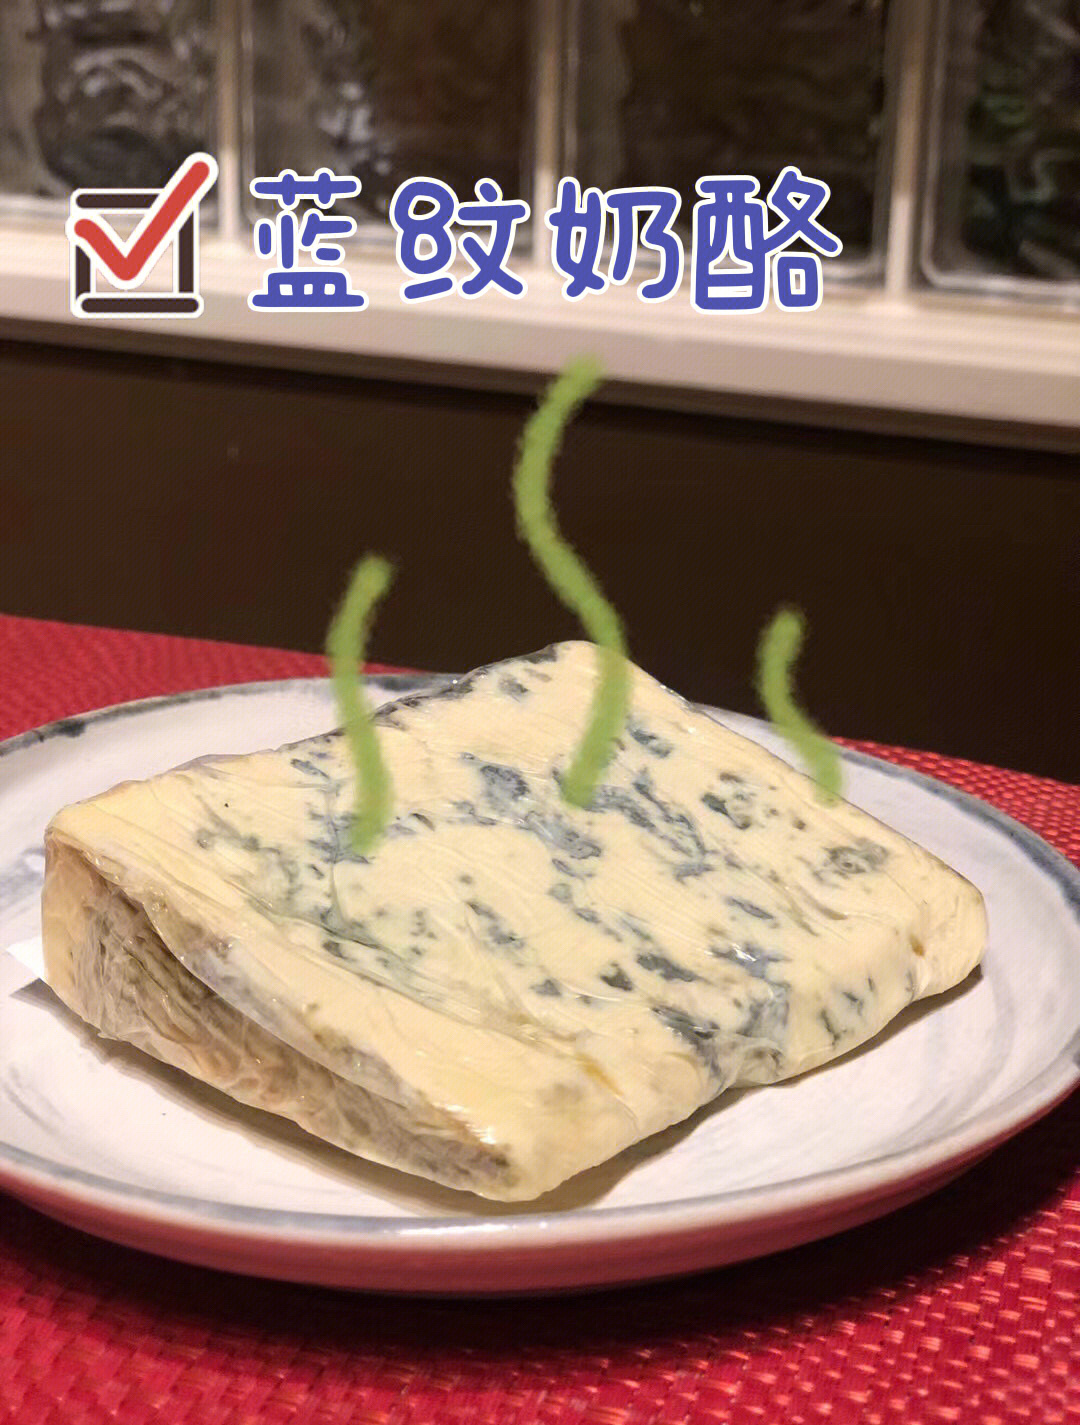 蓝纹奶酪有多臭图片